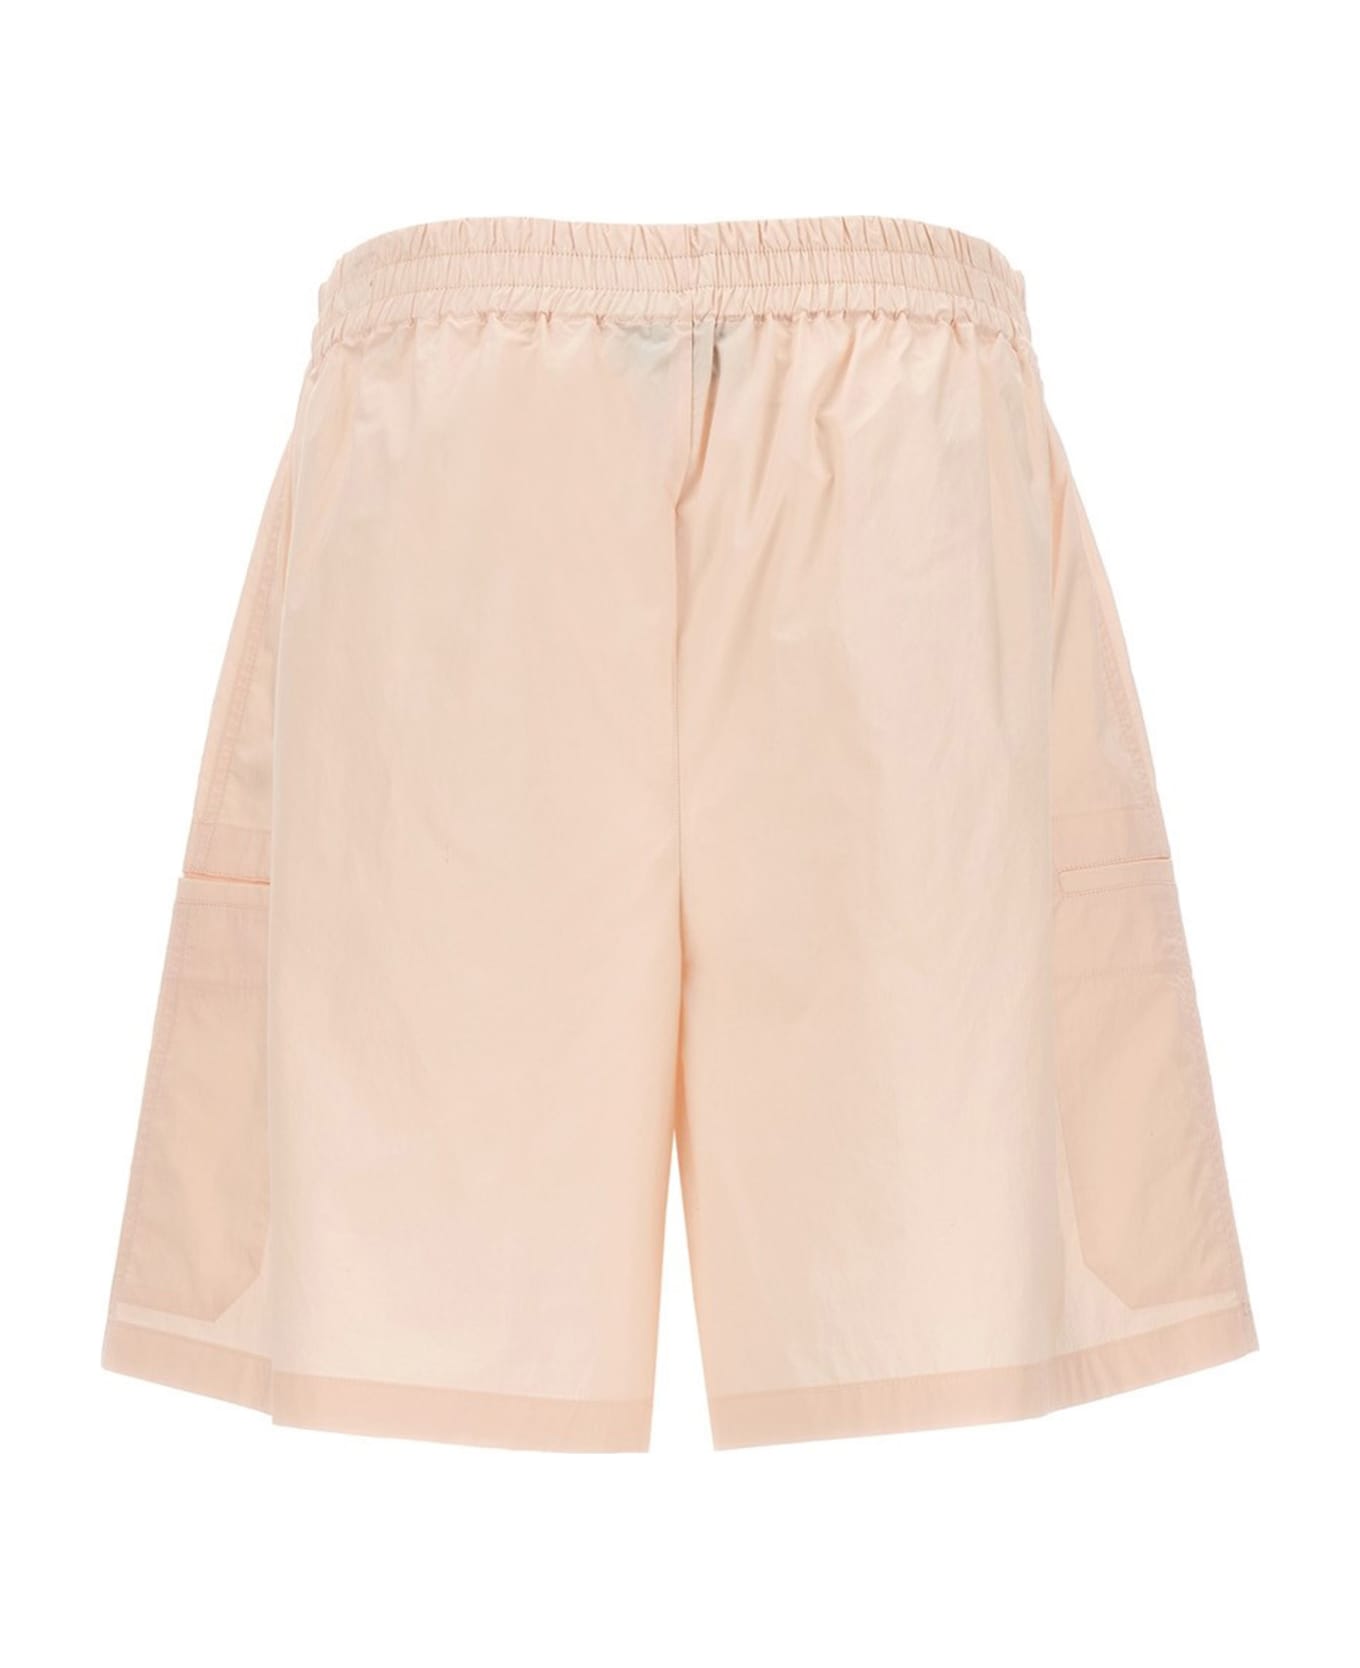 Studio Nicholson 'rio' Bermuda Shorts - Pink